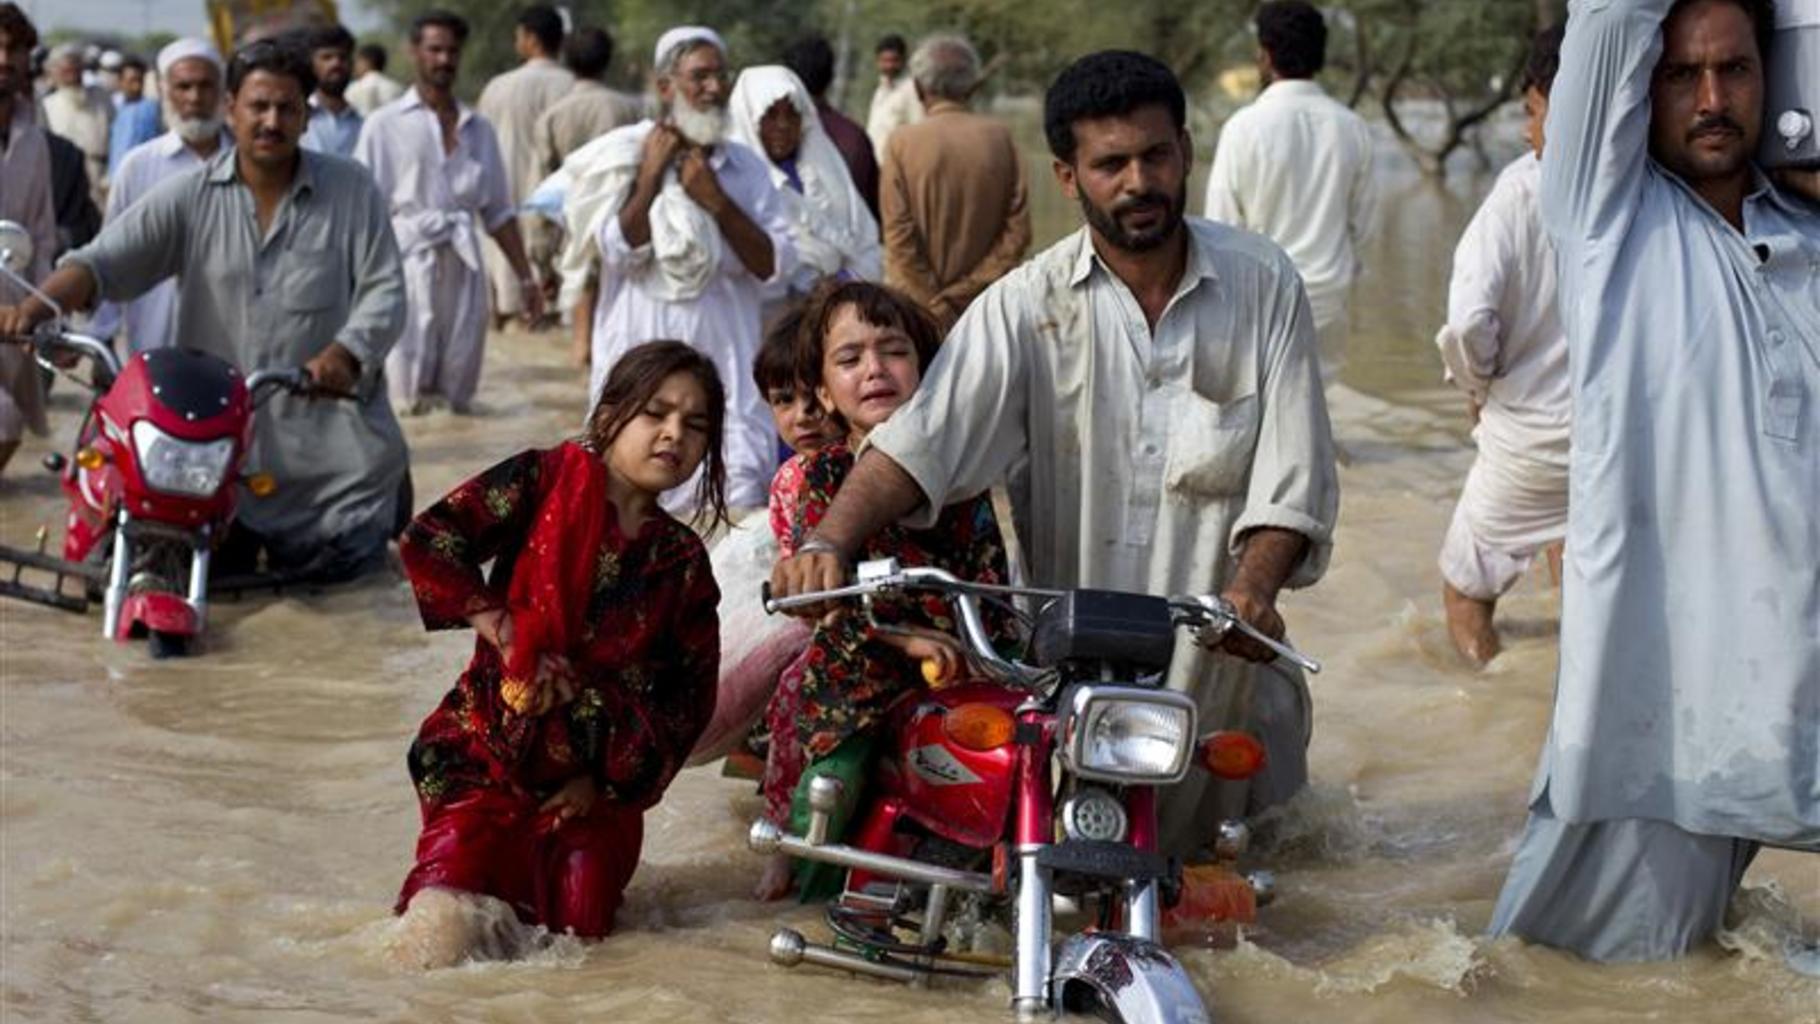 Foto: Ein Mann bringt seine Kinder in Sicherheit.